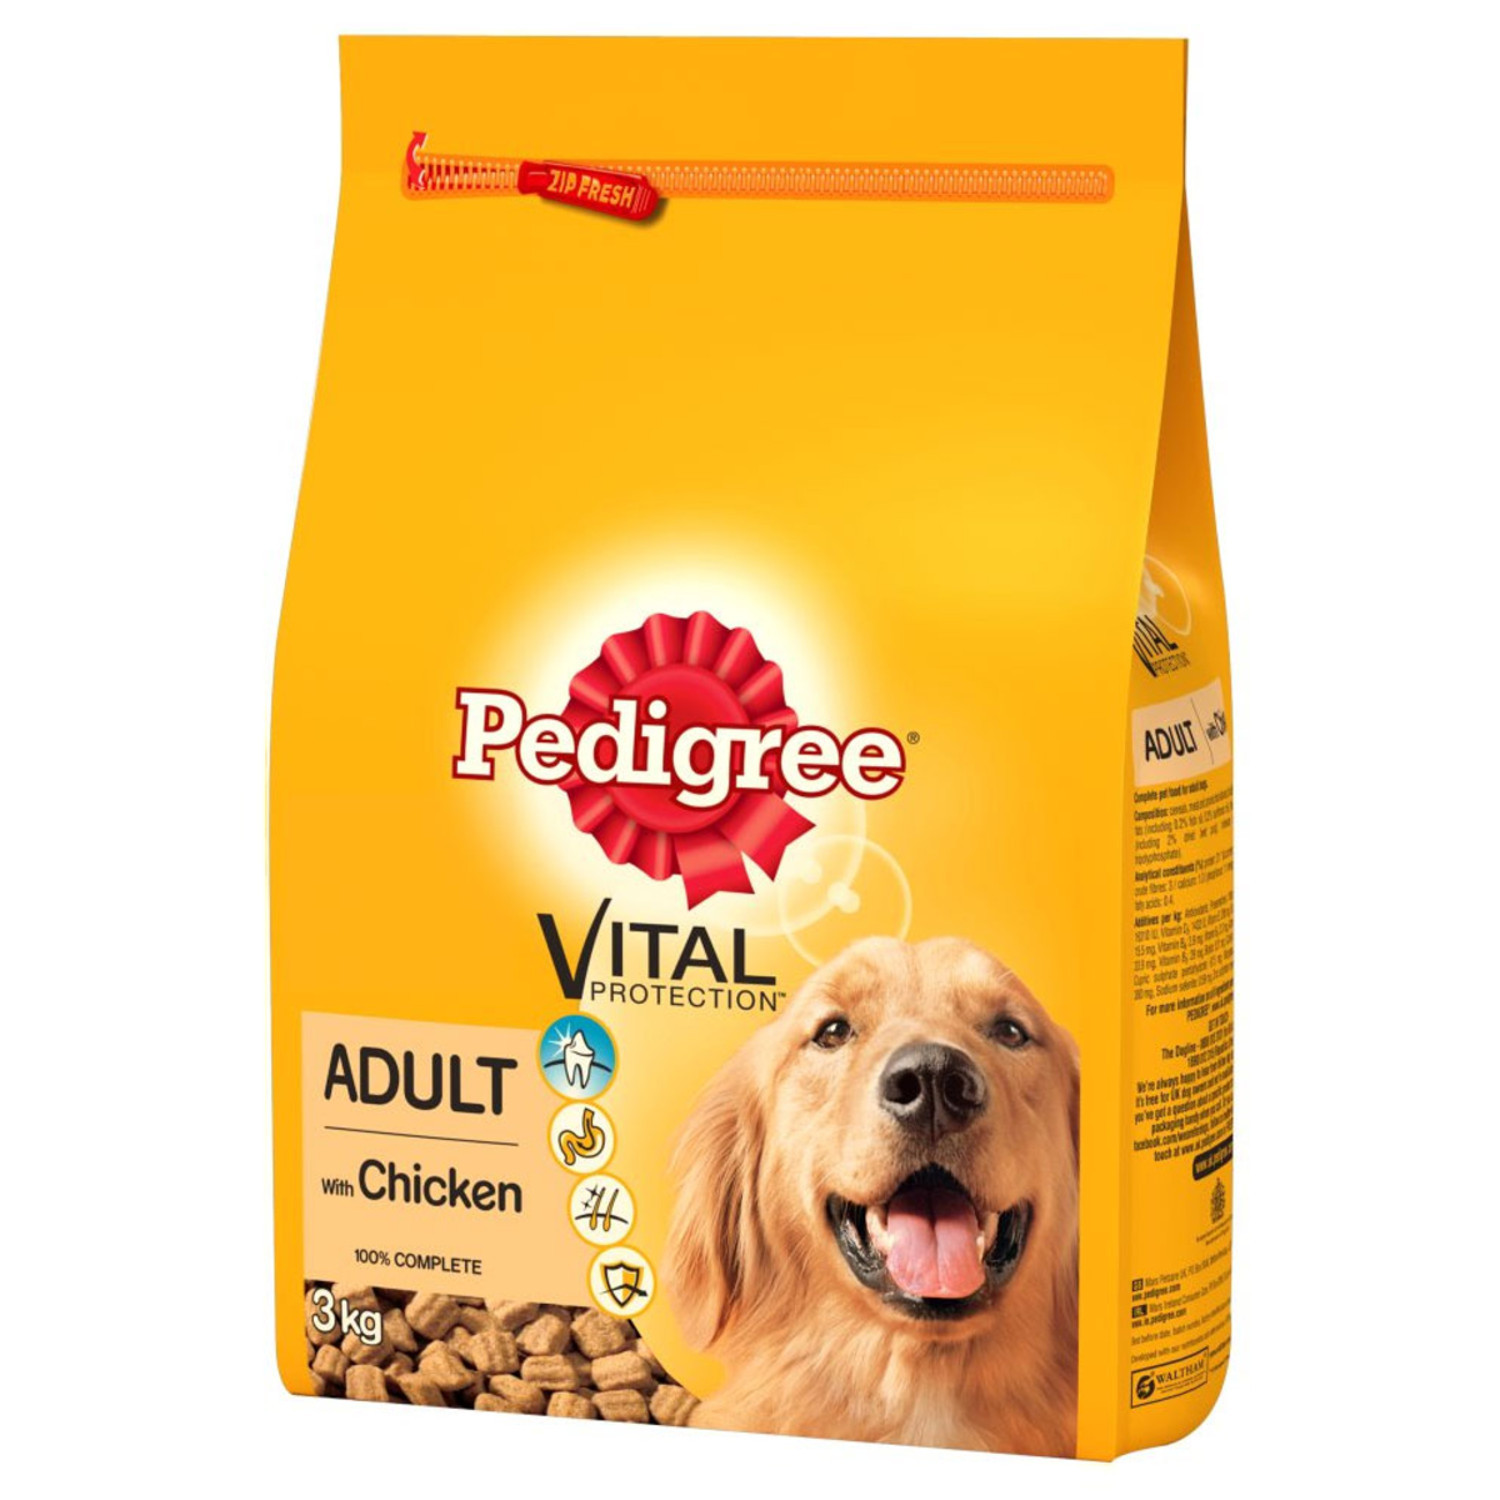 Pedigree Complete Chicken Adult Dog Food 3kg Image